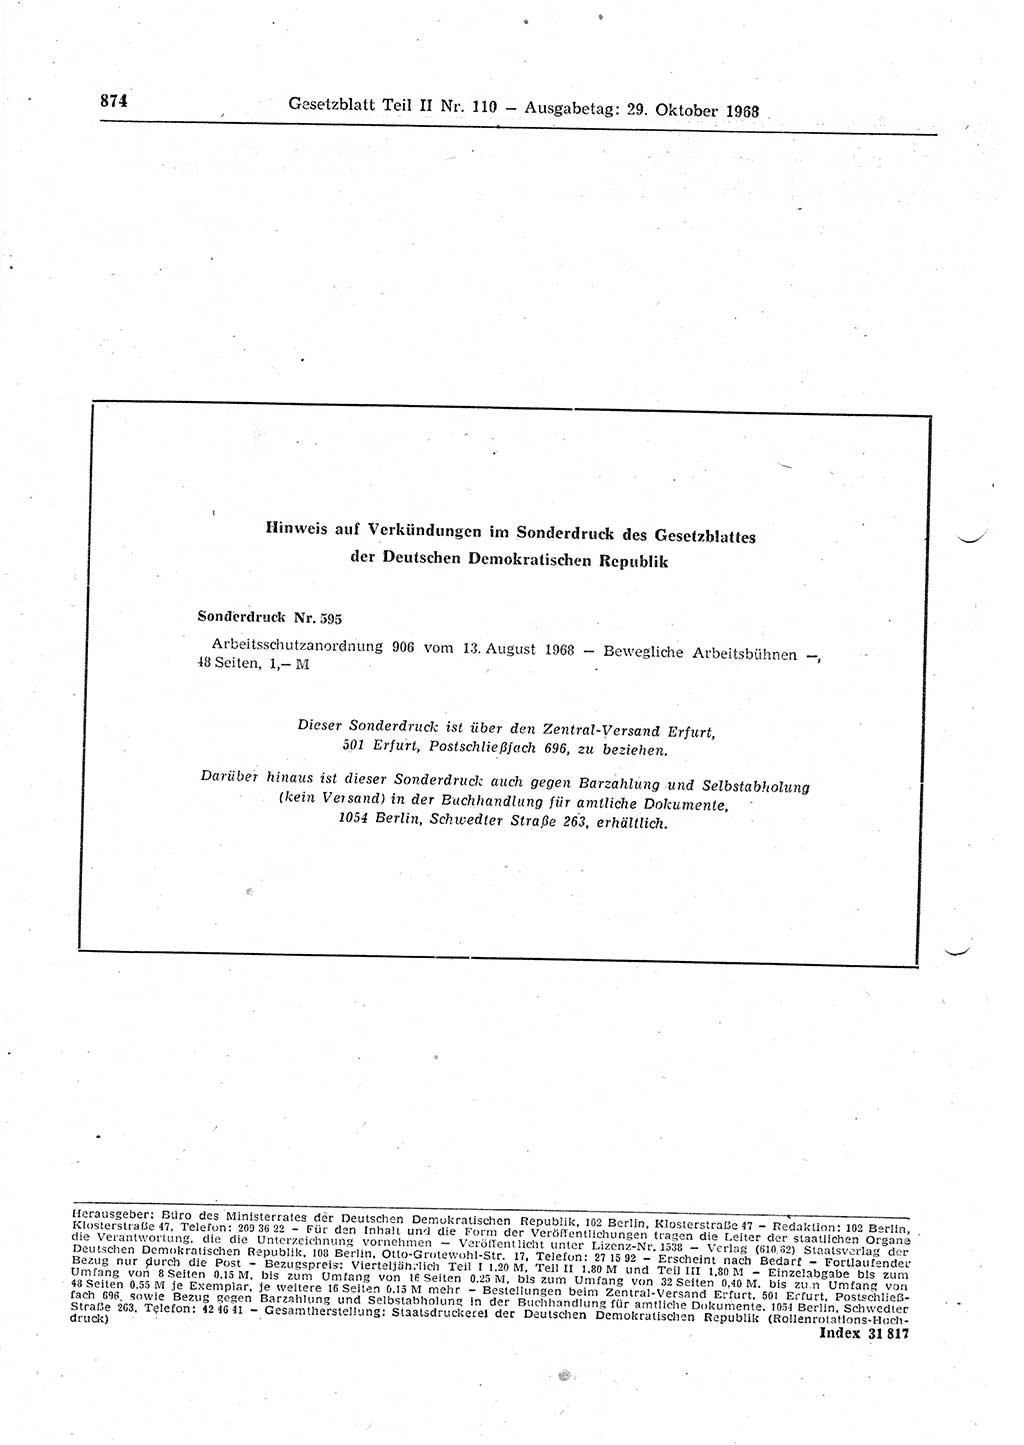 Gesetzblatt (GBl.) der Deutschen Demokratischen Republik (DDR) Teil ⅠⅠ 1968, Seite 874 (GBl. DDR ⅠⅠ 1968, S. 874)